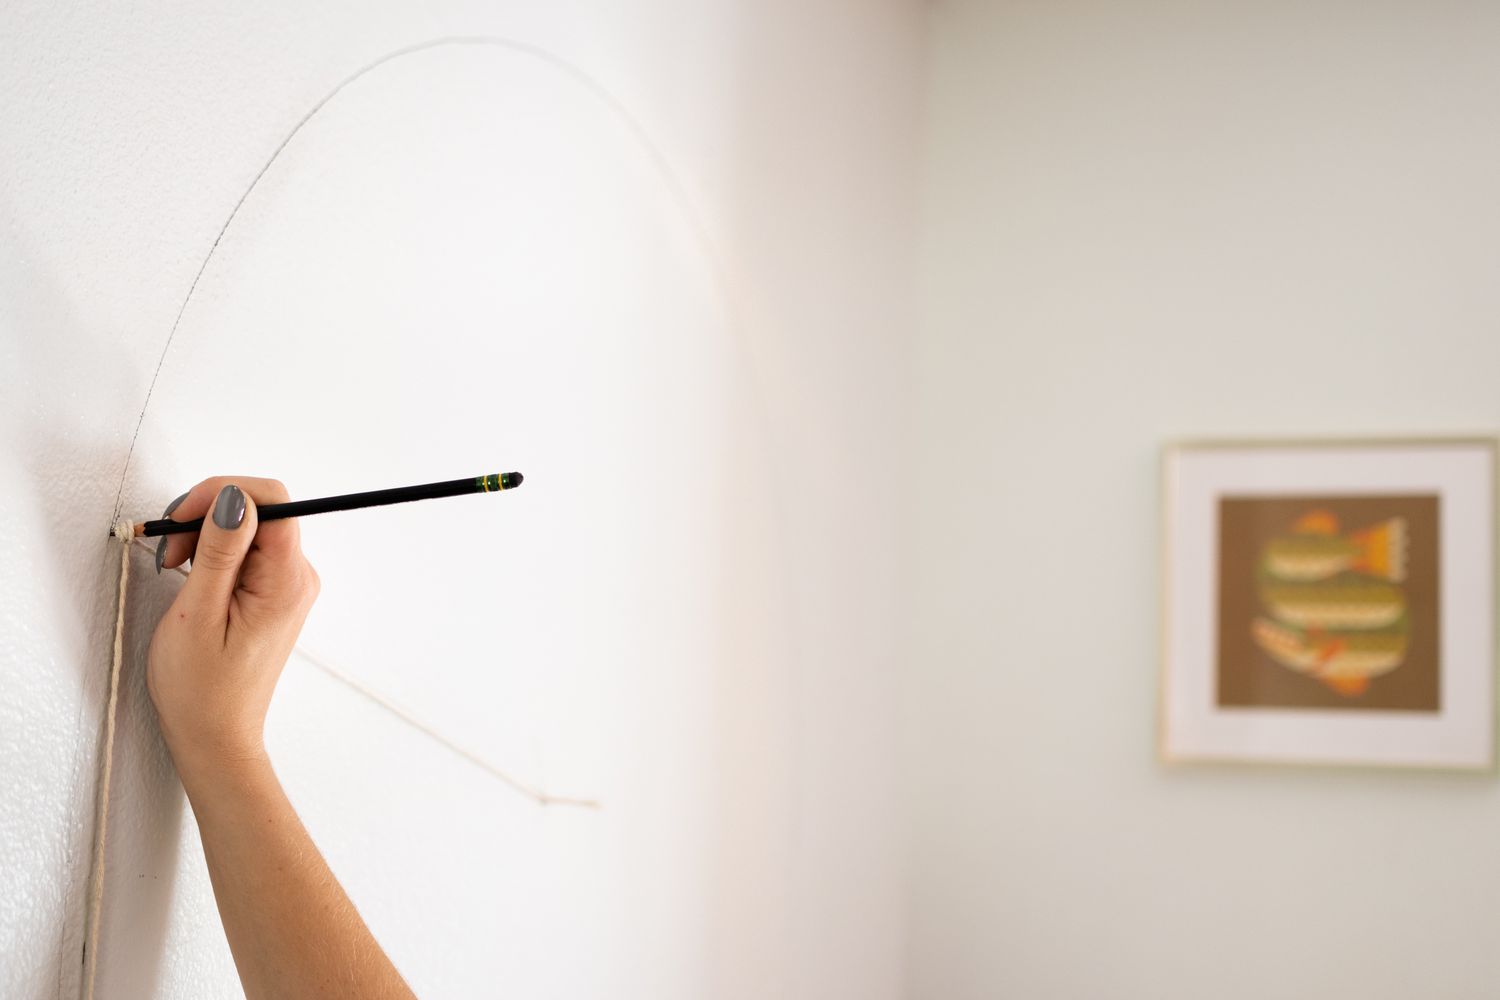 Forme d'arc tracée sur le mur avec crayon et ficelle pour mesure